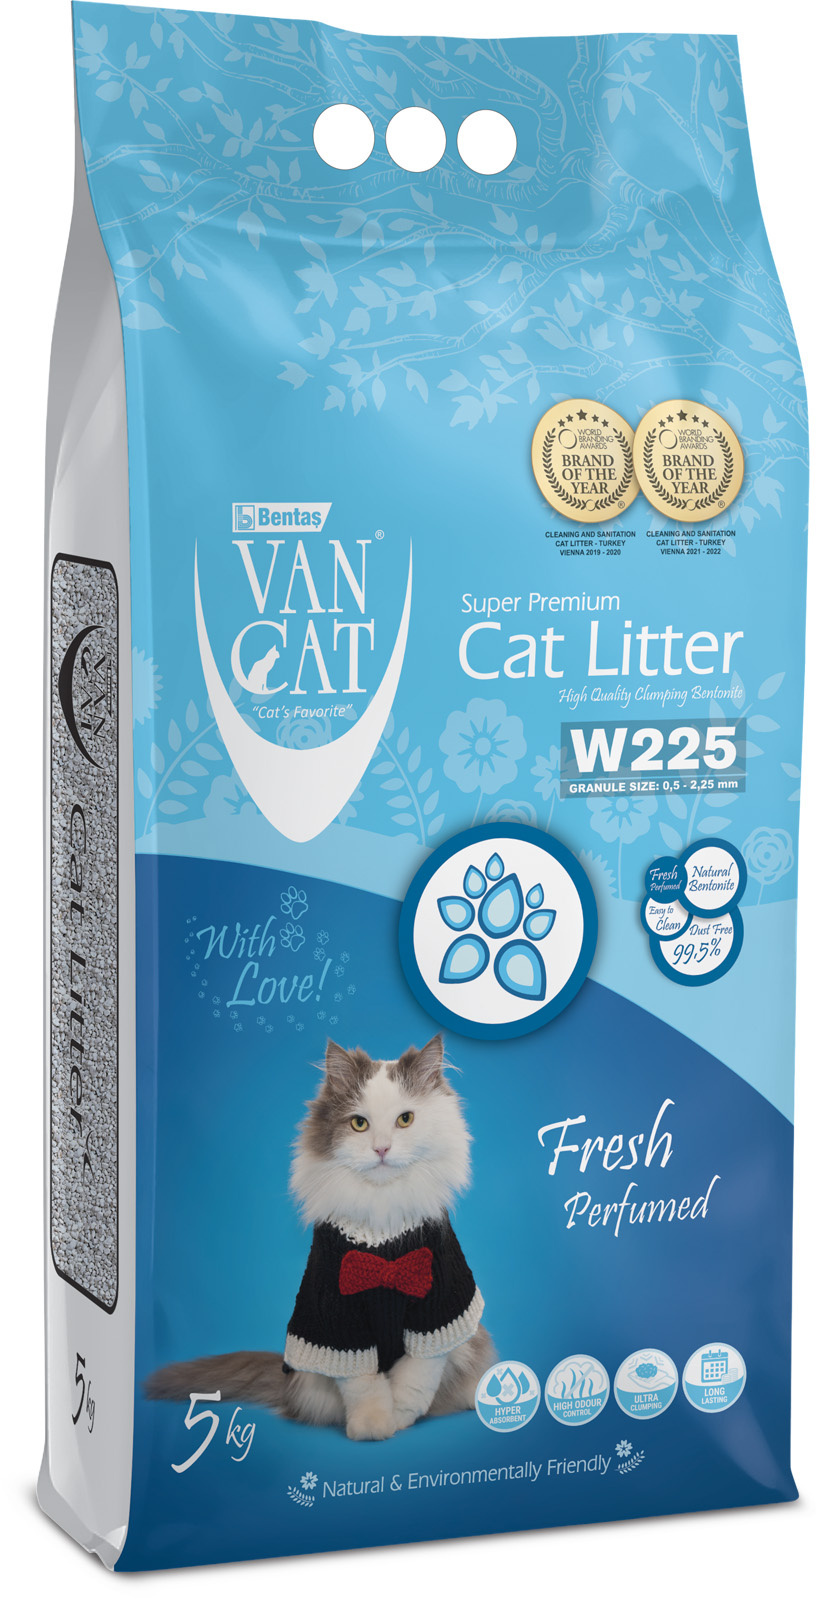 Van Cat Van Cat комкующийся наполнитель без пыли с ароматом весенней свежести, пакет (10 кг)